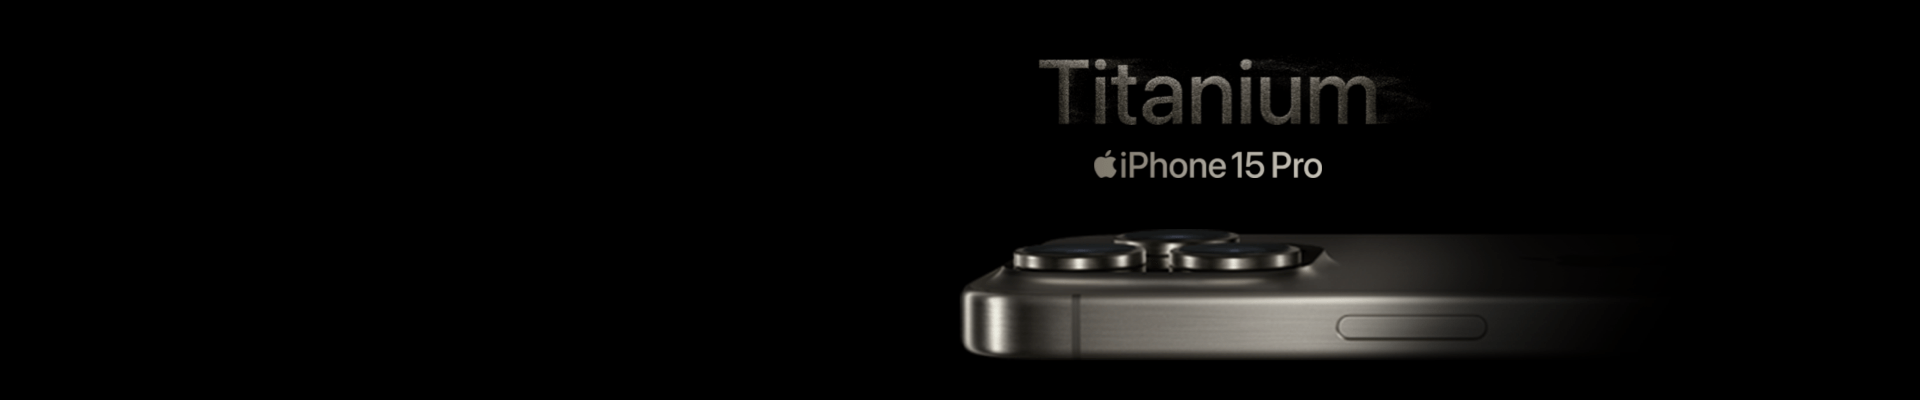 iPhone 15 Titanium